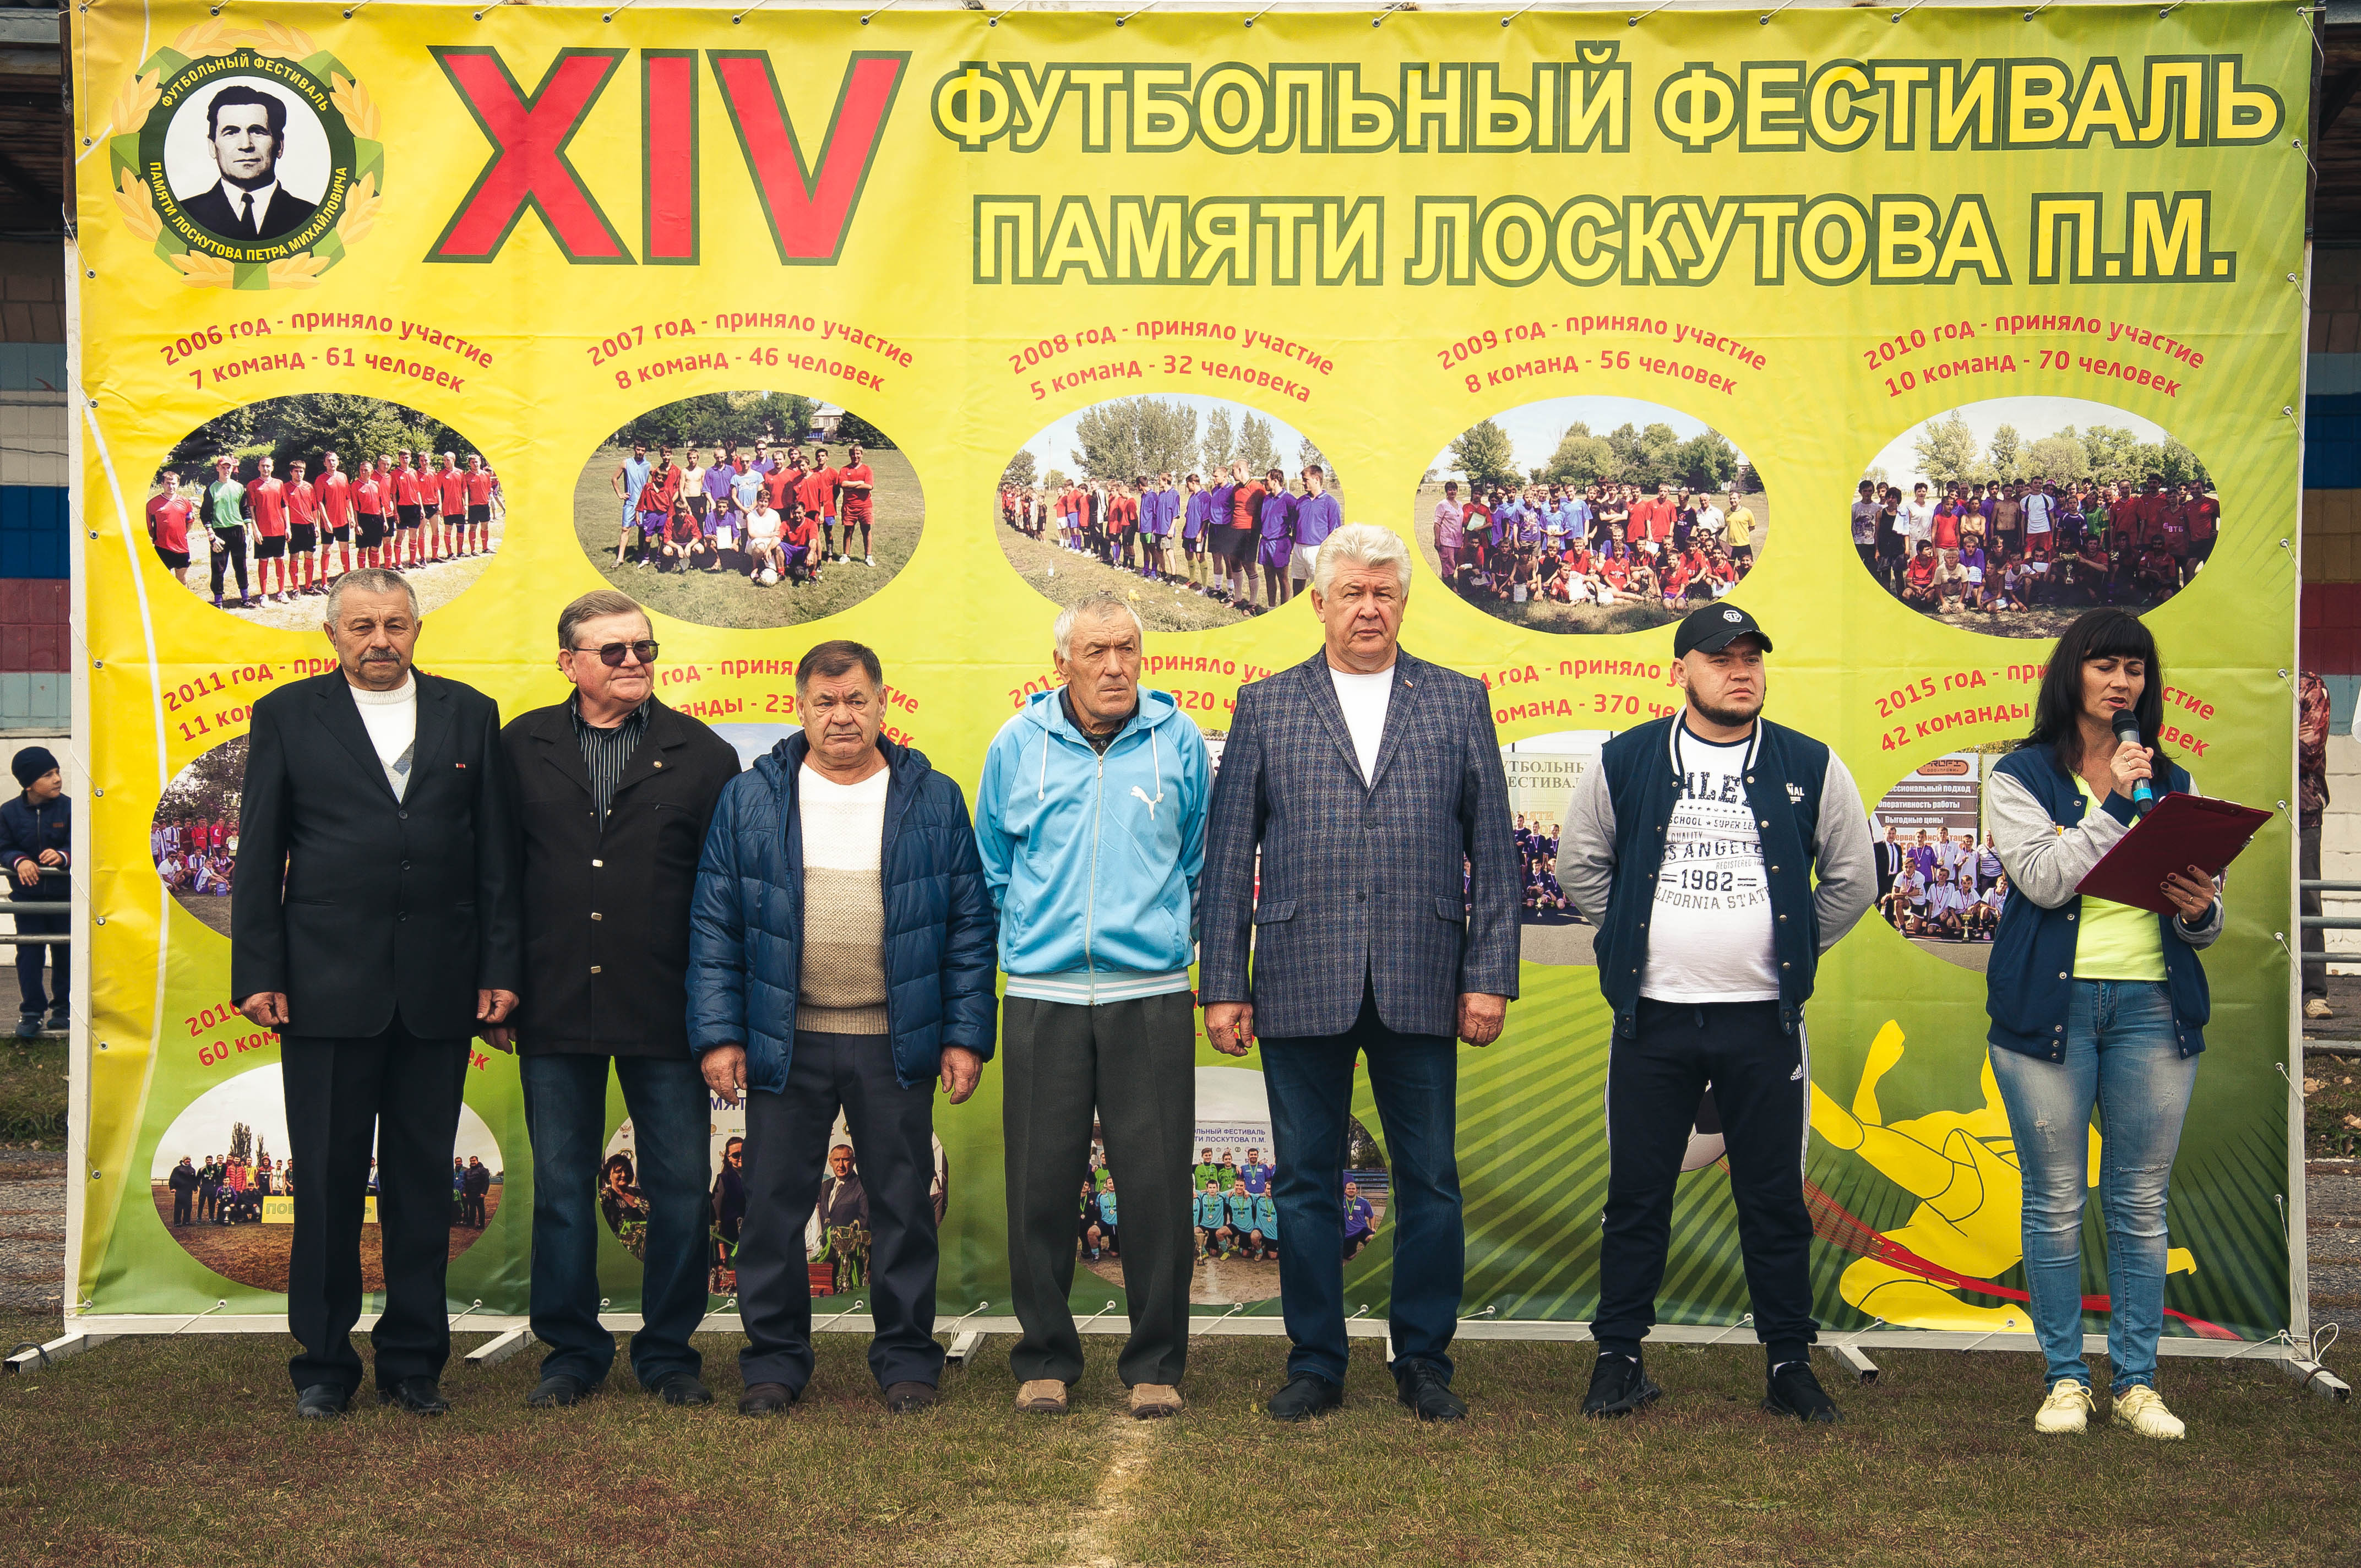 28 сентября 2019 г. на стадионе “Центральный” п. Чертково состоялся XIV футбольный фестиваль памяти Лоскутова П.М. 